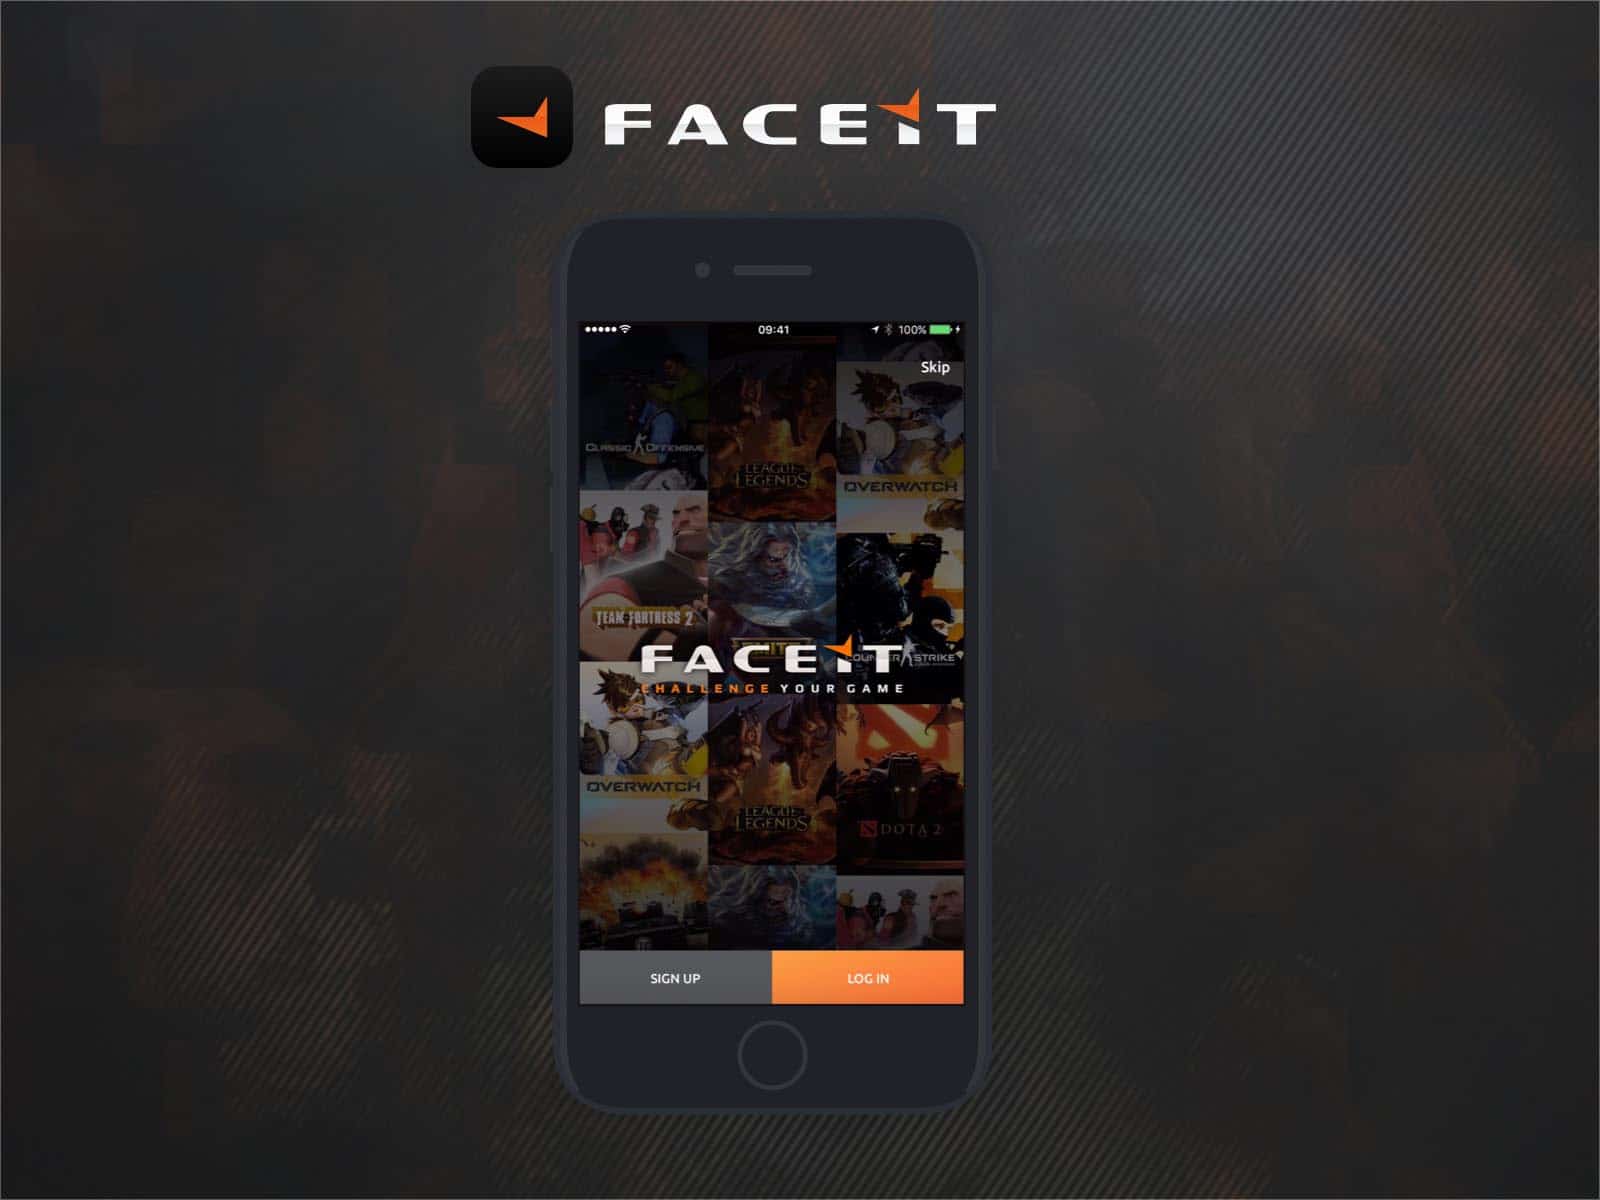 faceit app ux design intro screen